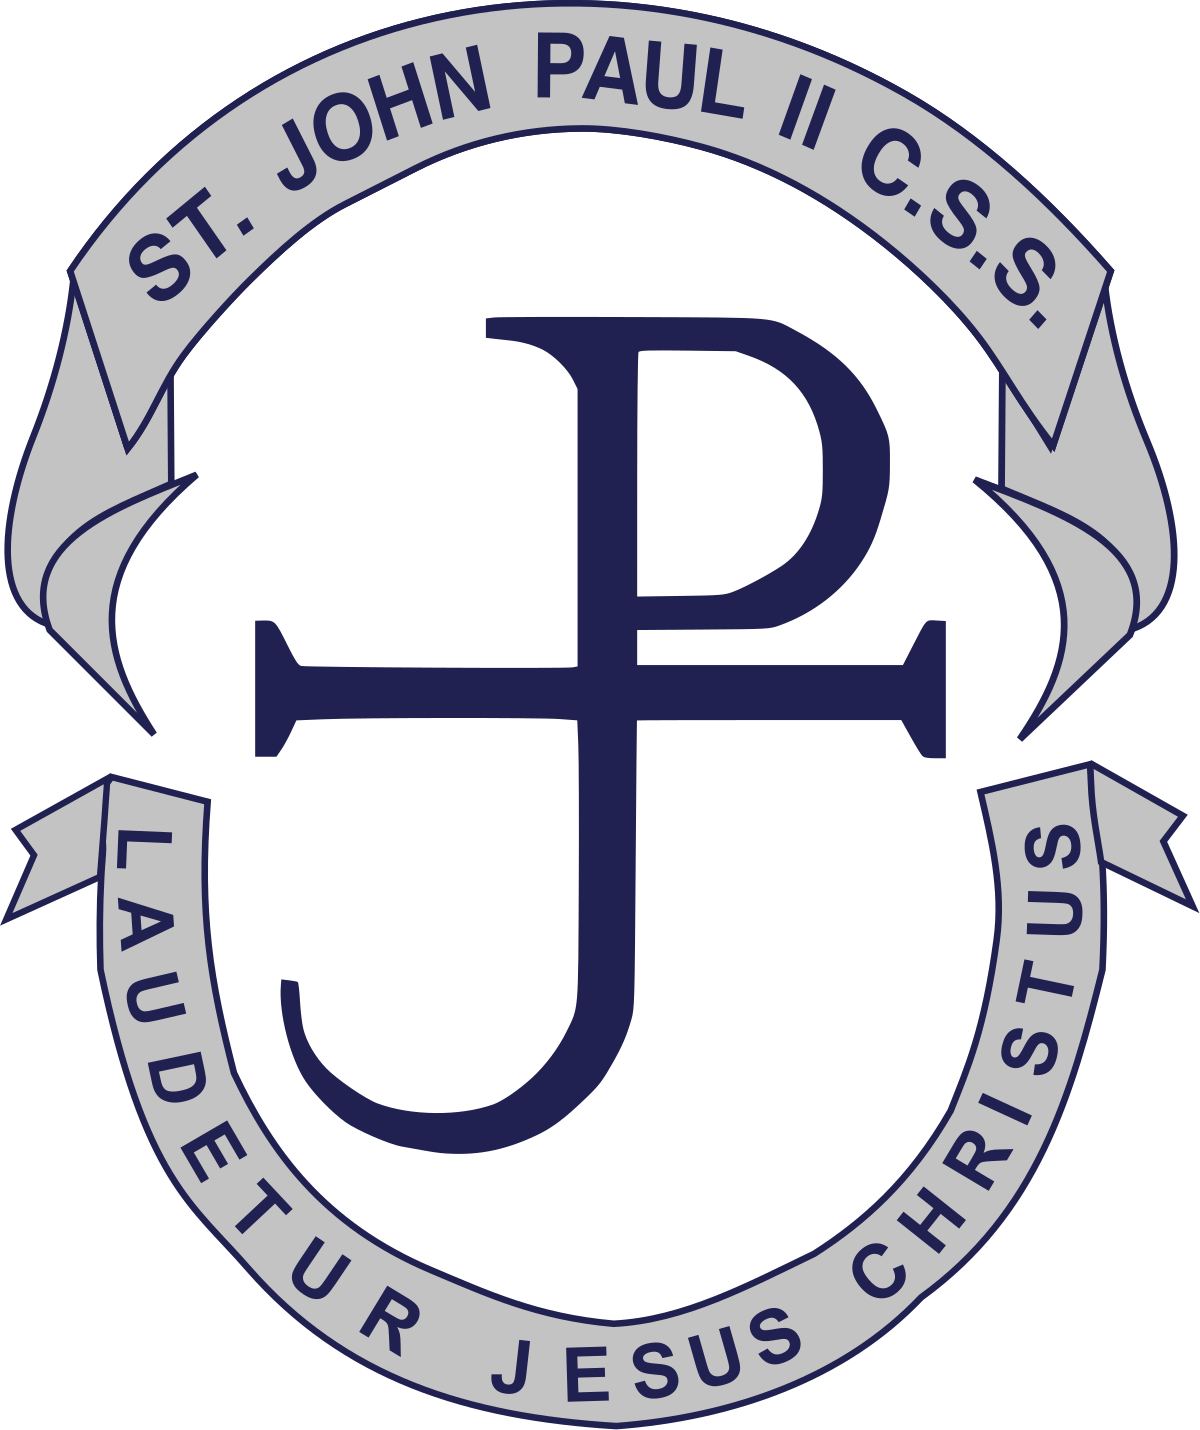 Saint John Paul ll Catholic Secondary School